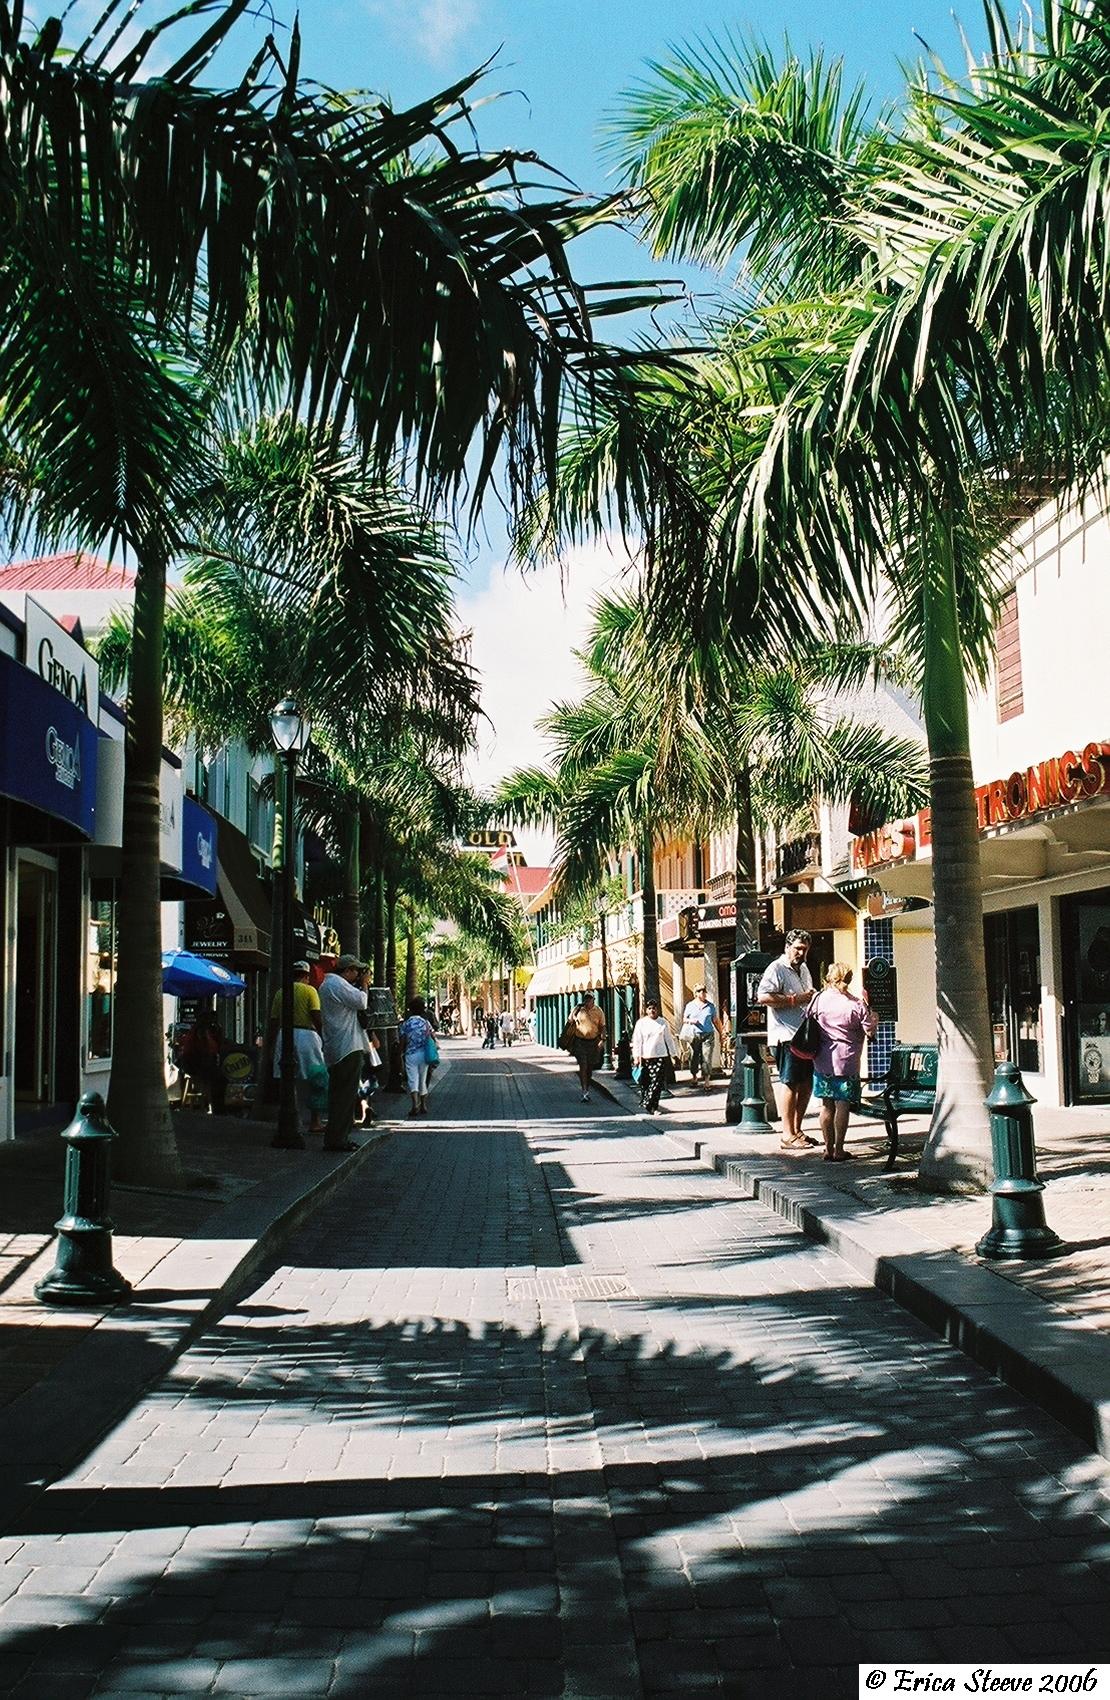 St Maarten's shopping district